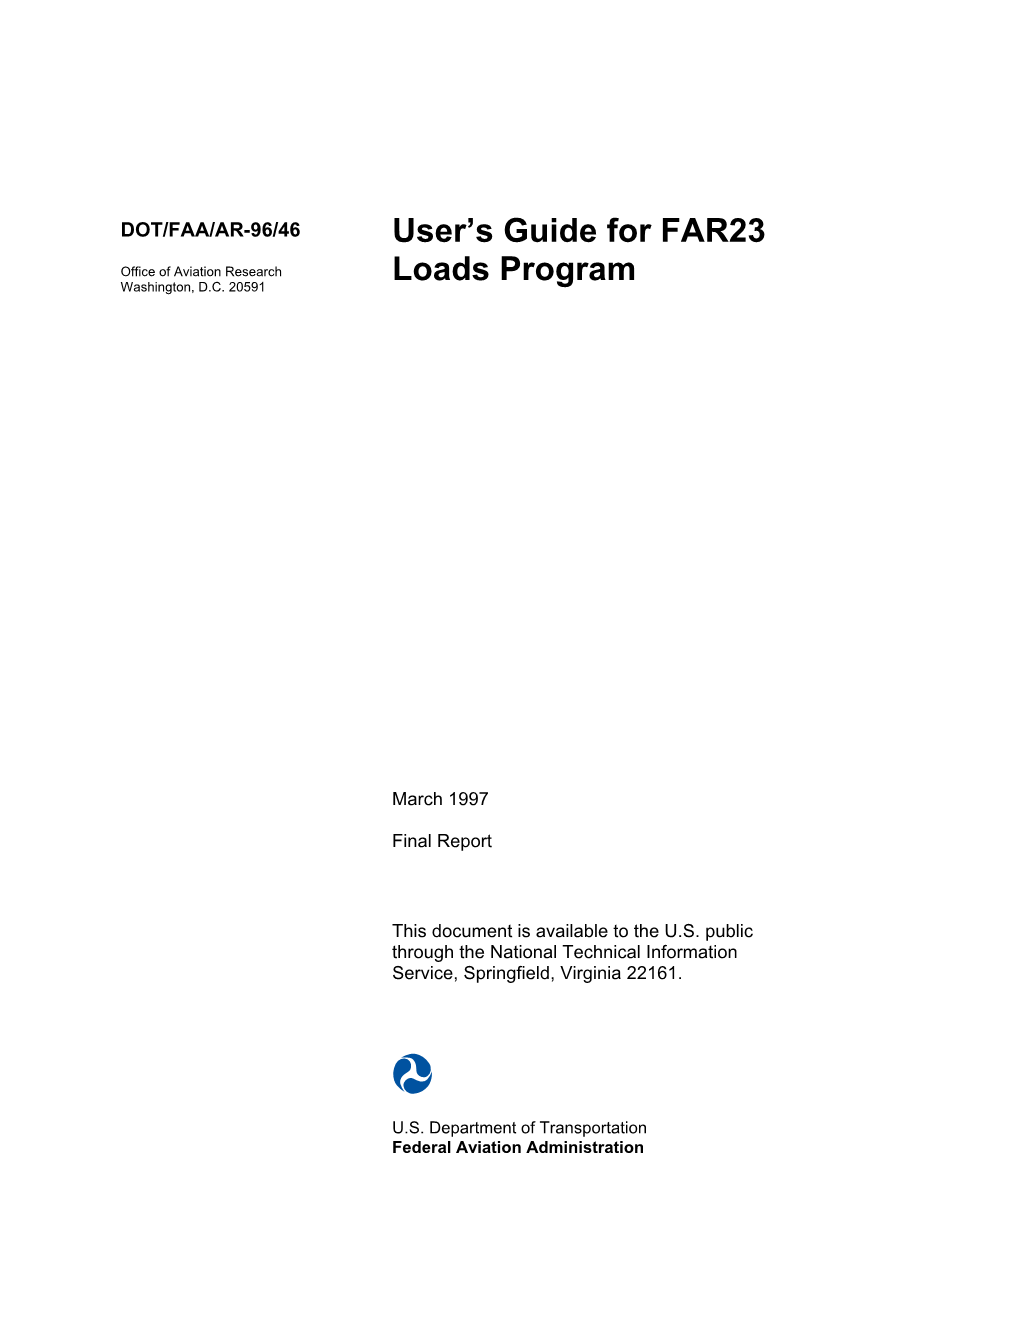 User's Guide for FAR23 Loads Program